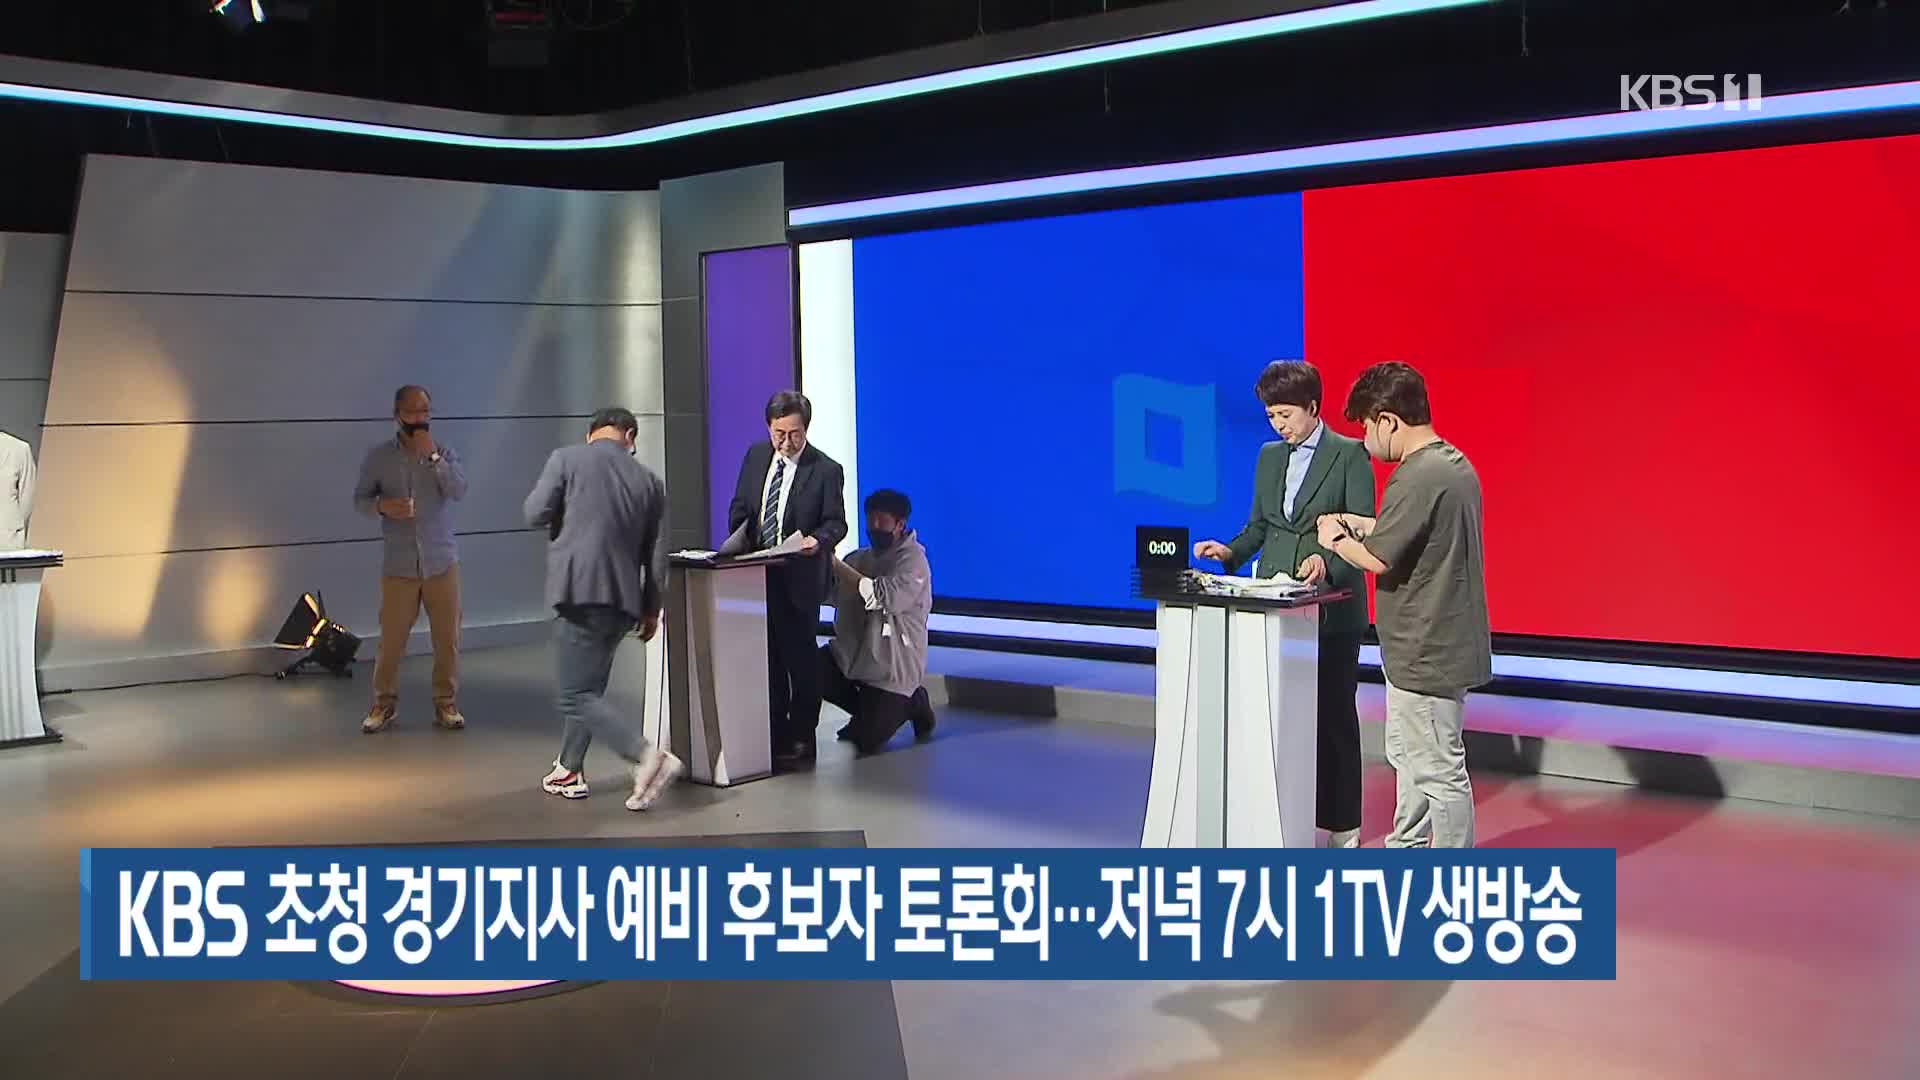 KBS 초청 경기지사 예비후보자 토론회…저녁 7시 1TV 생방송